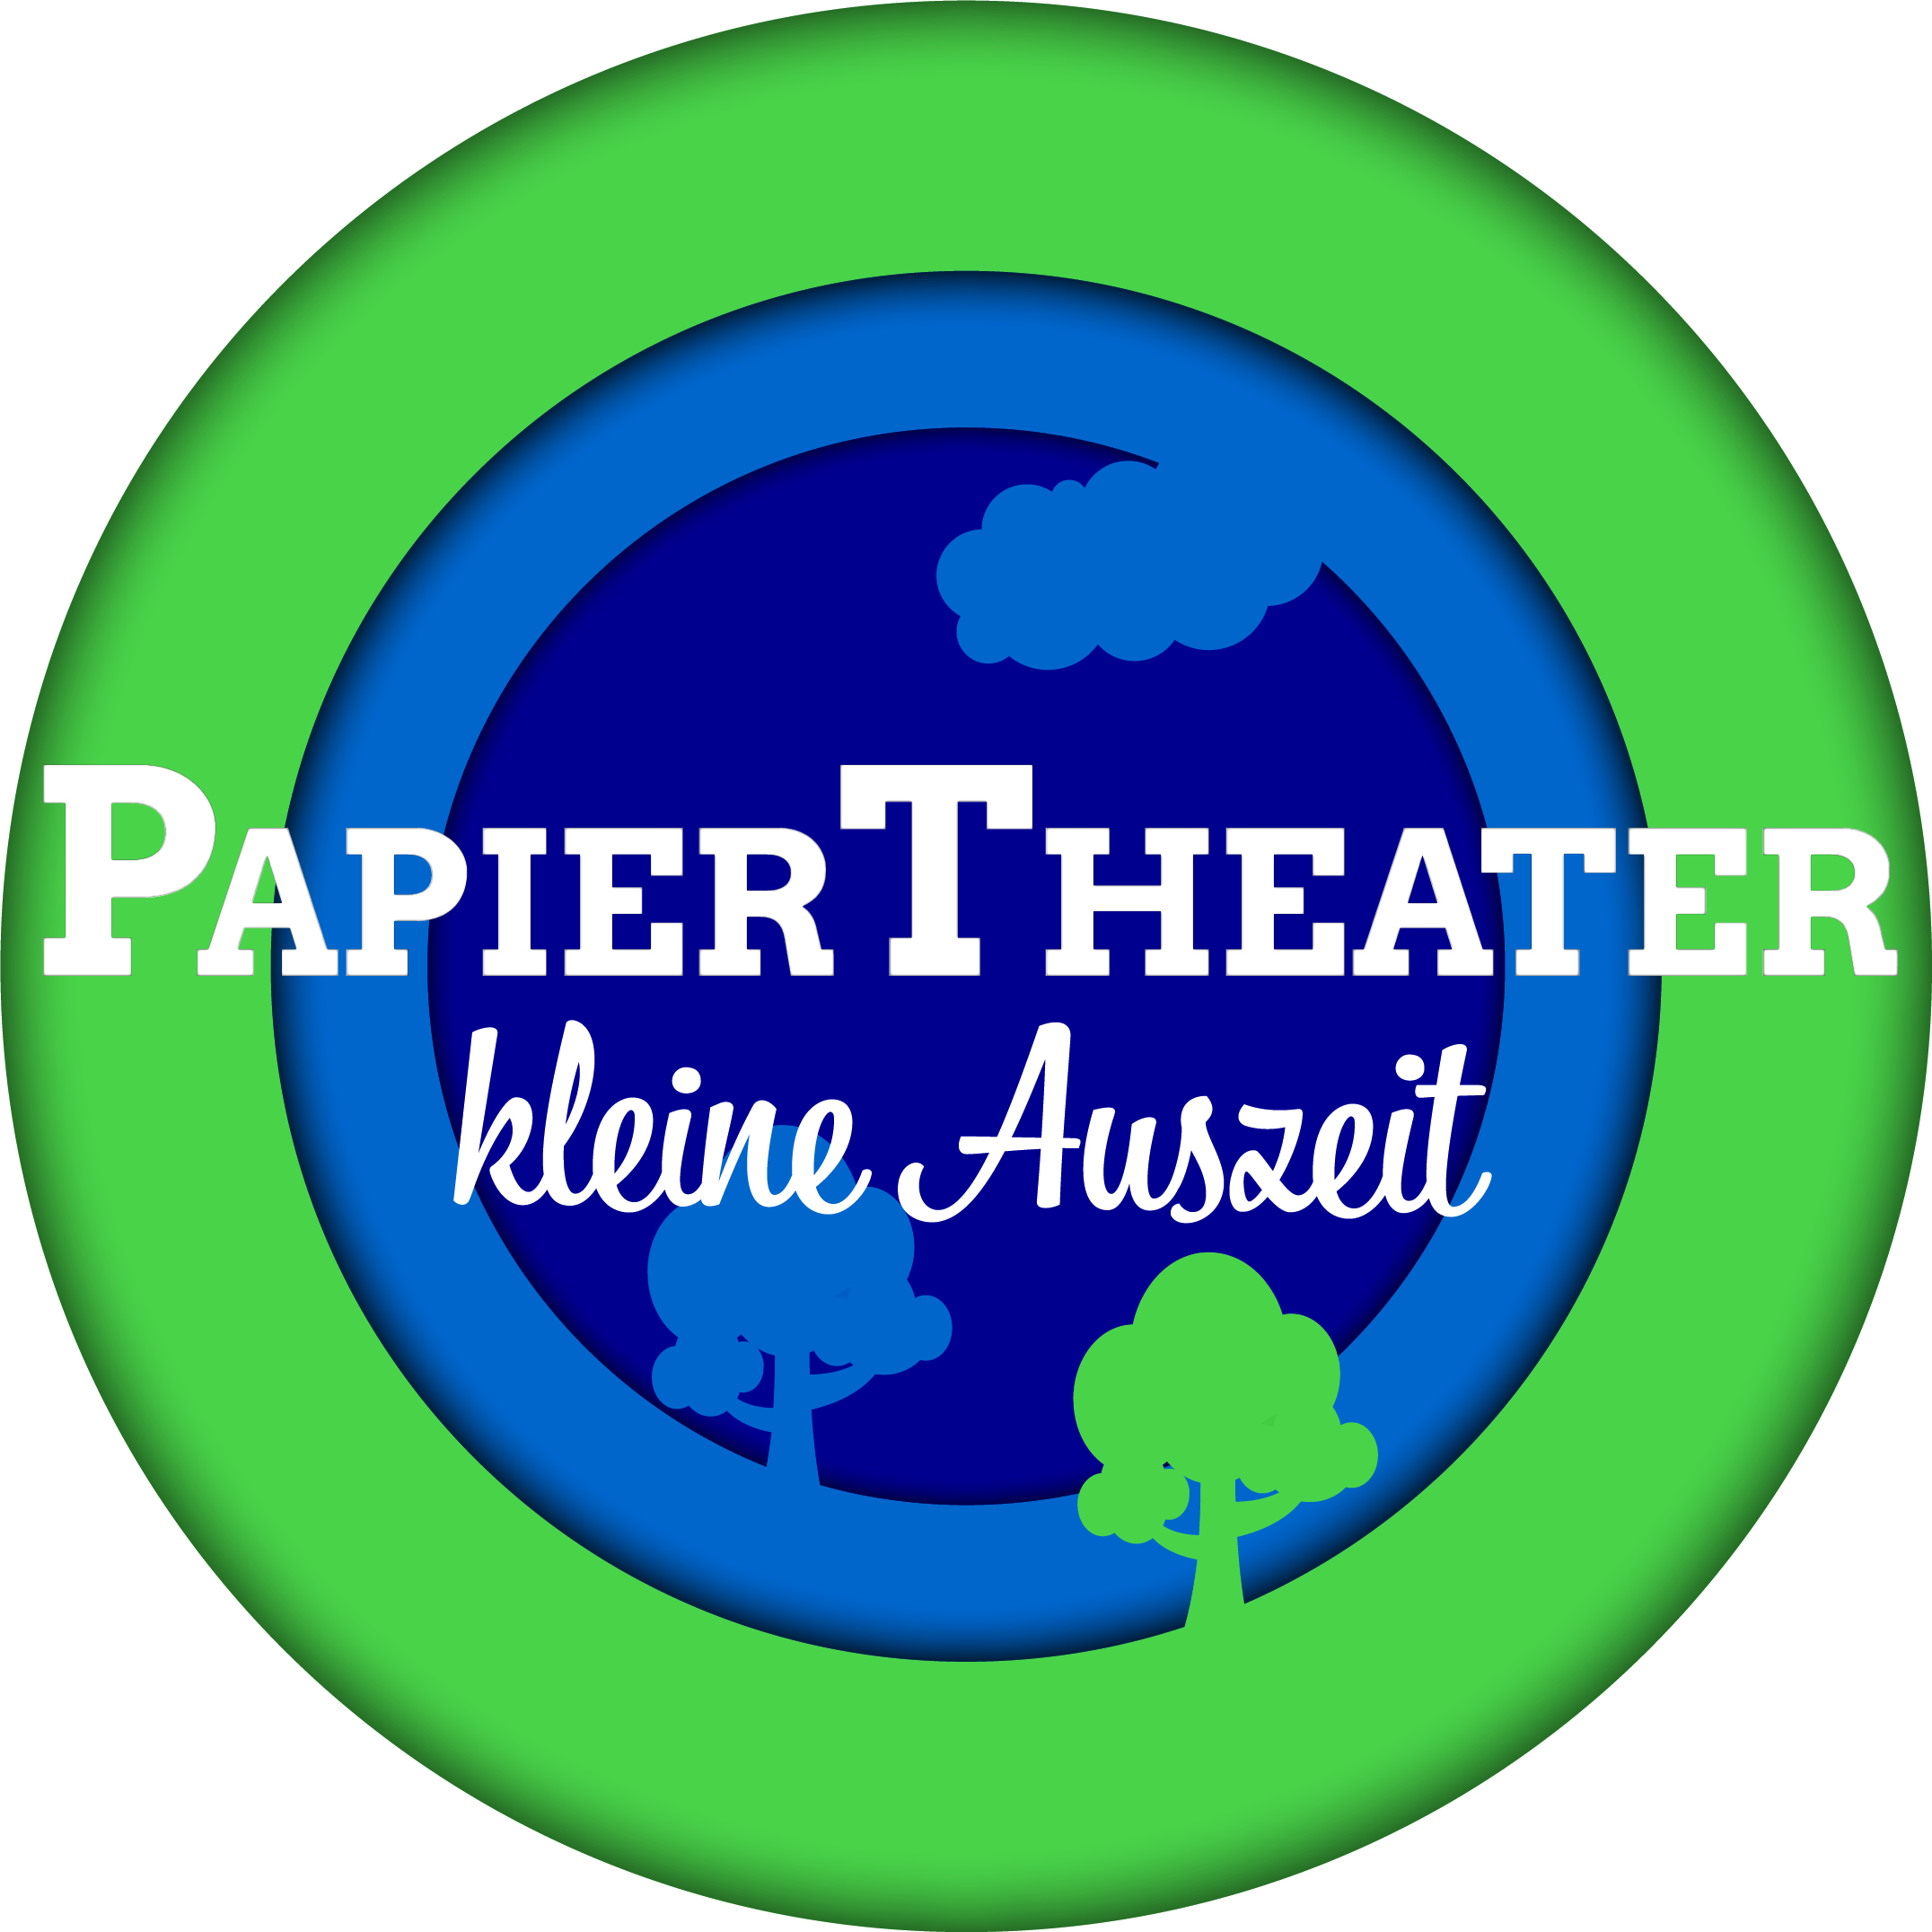 Papiertheater "Kleine Auszeit"